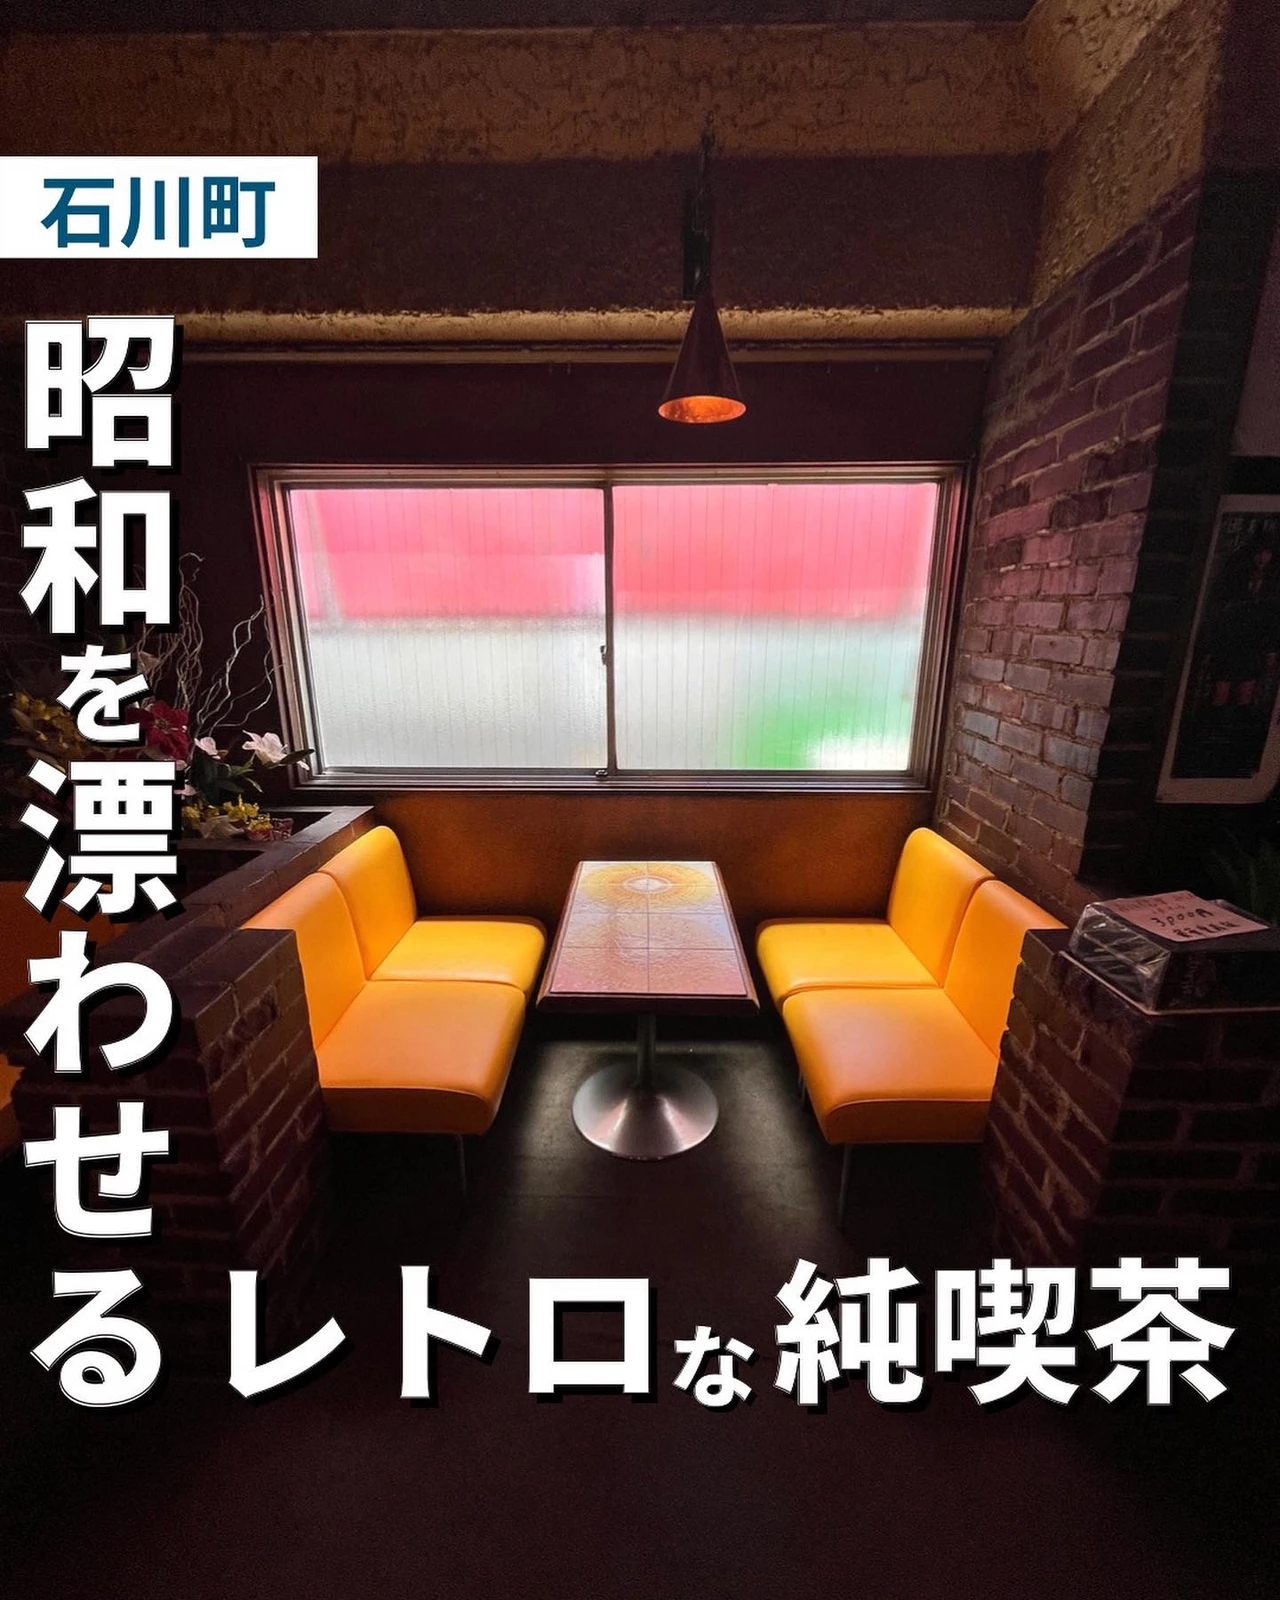 昭和を漂わせる レトロな純喫茶 ゆき カフェ巡り 東京 神奈川が投稿したフォトブック Lemon8